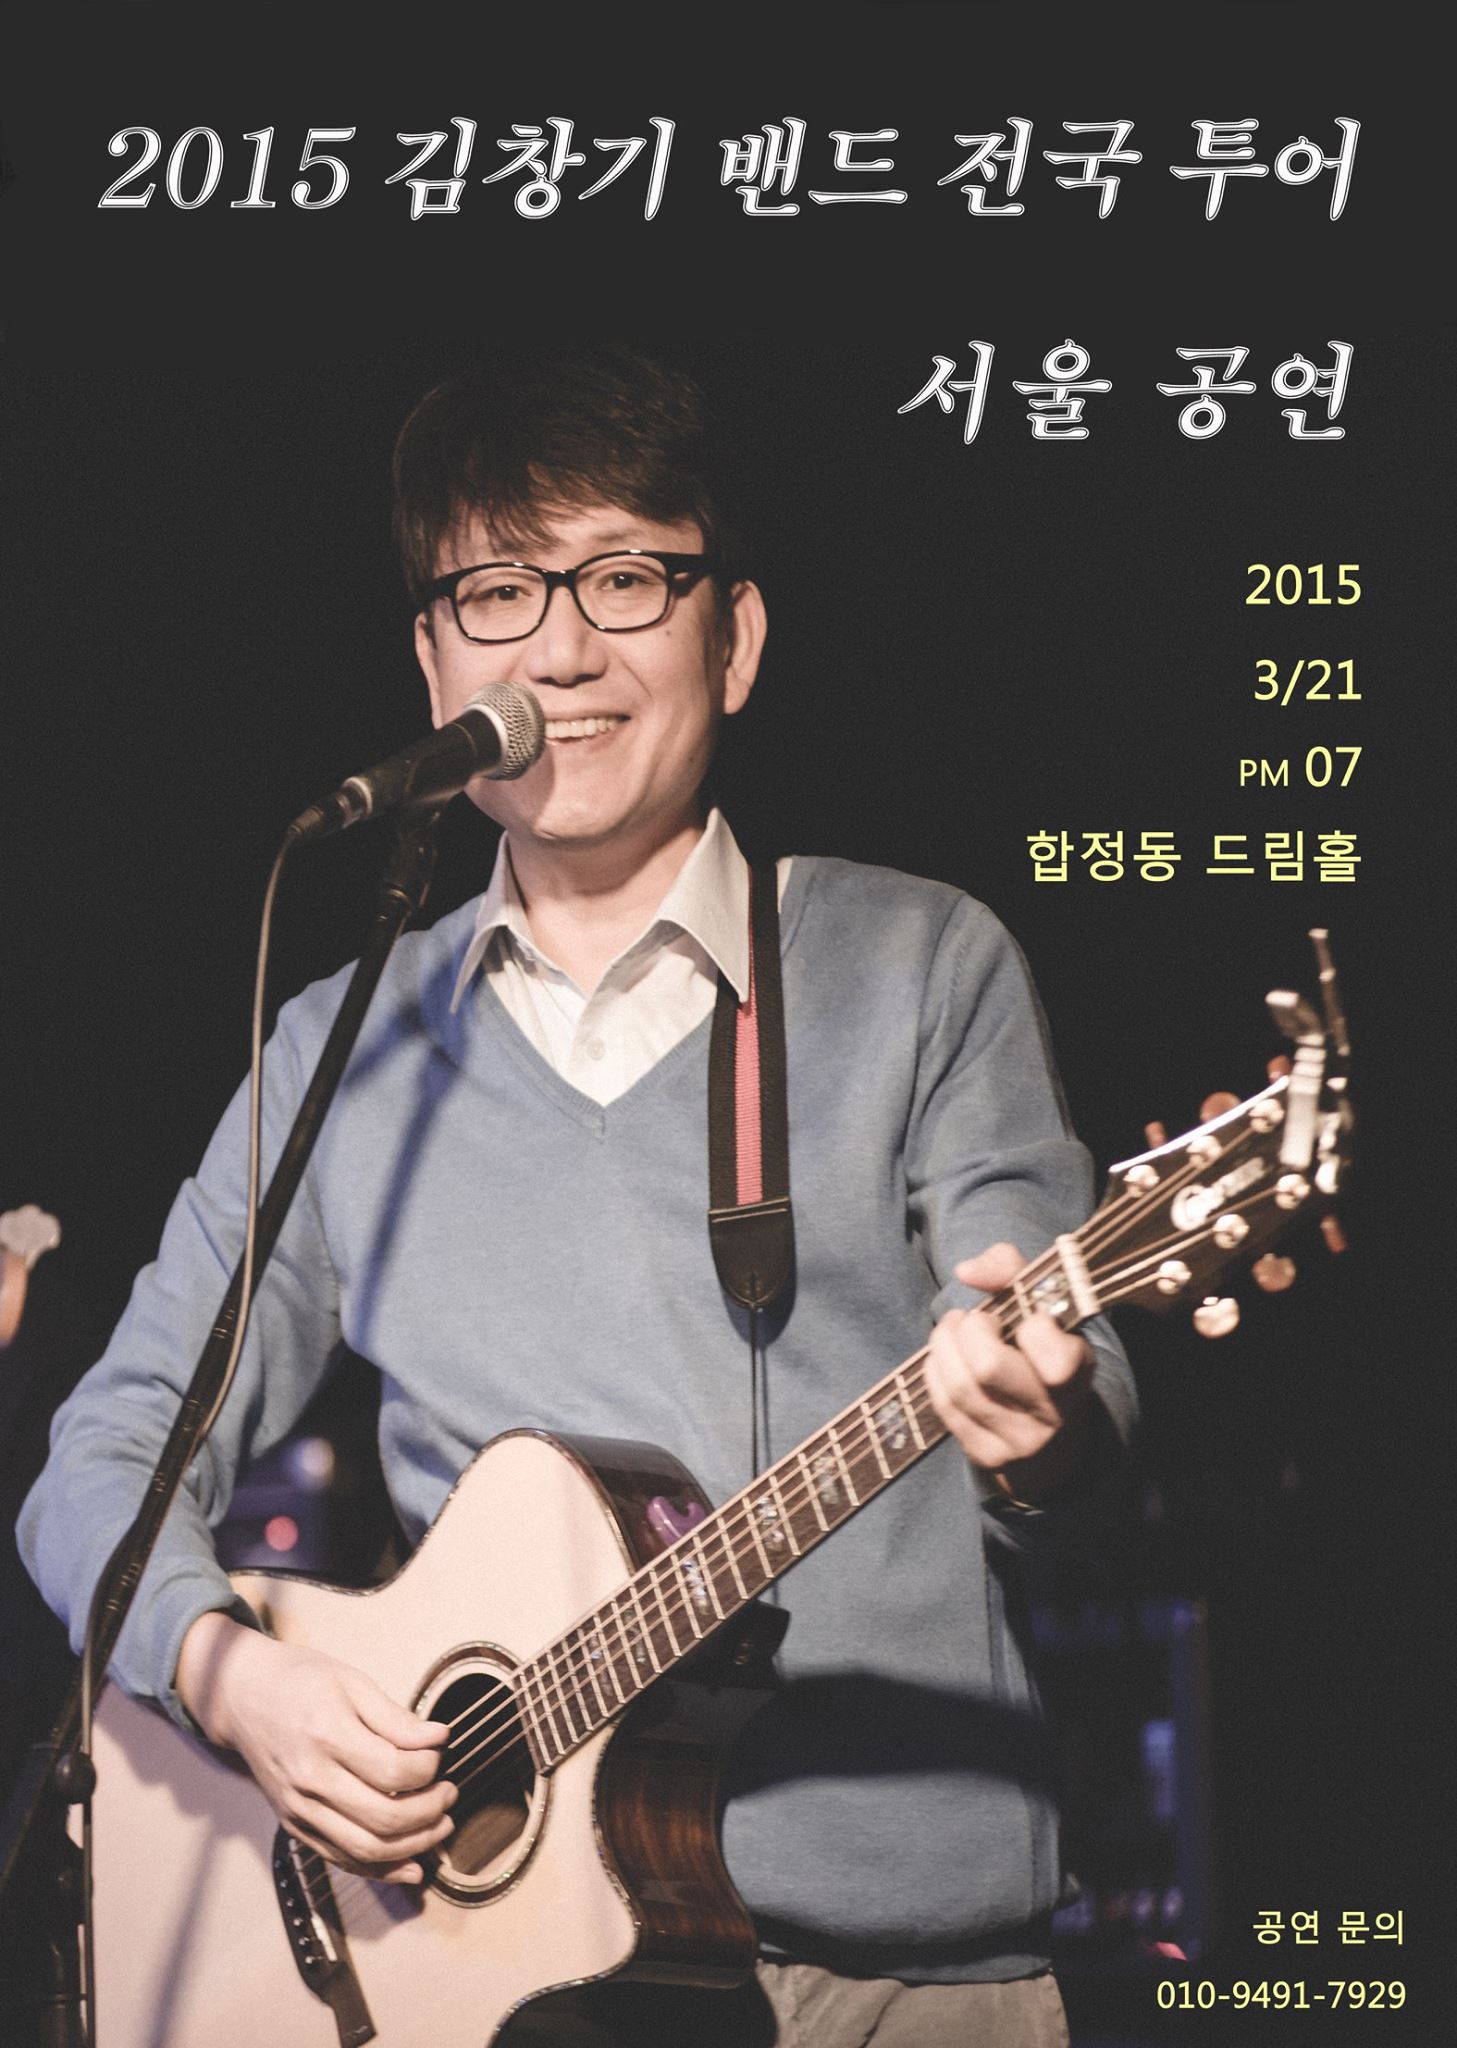 2015년 3월 21일 서울 공연 포스터.jpg